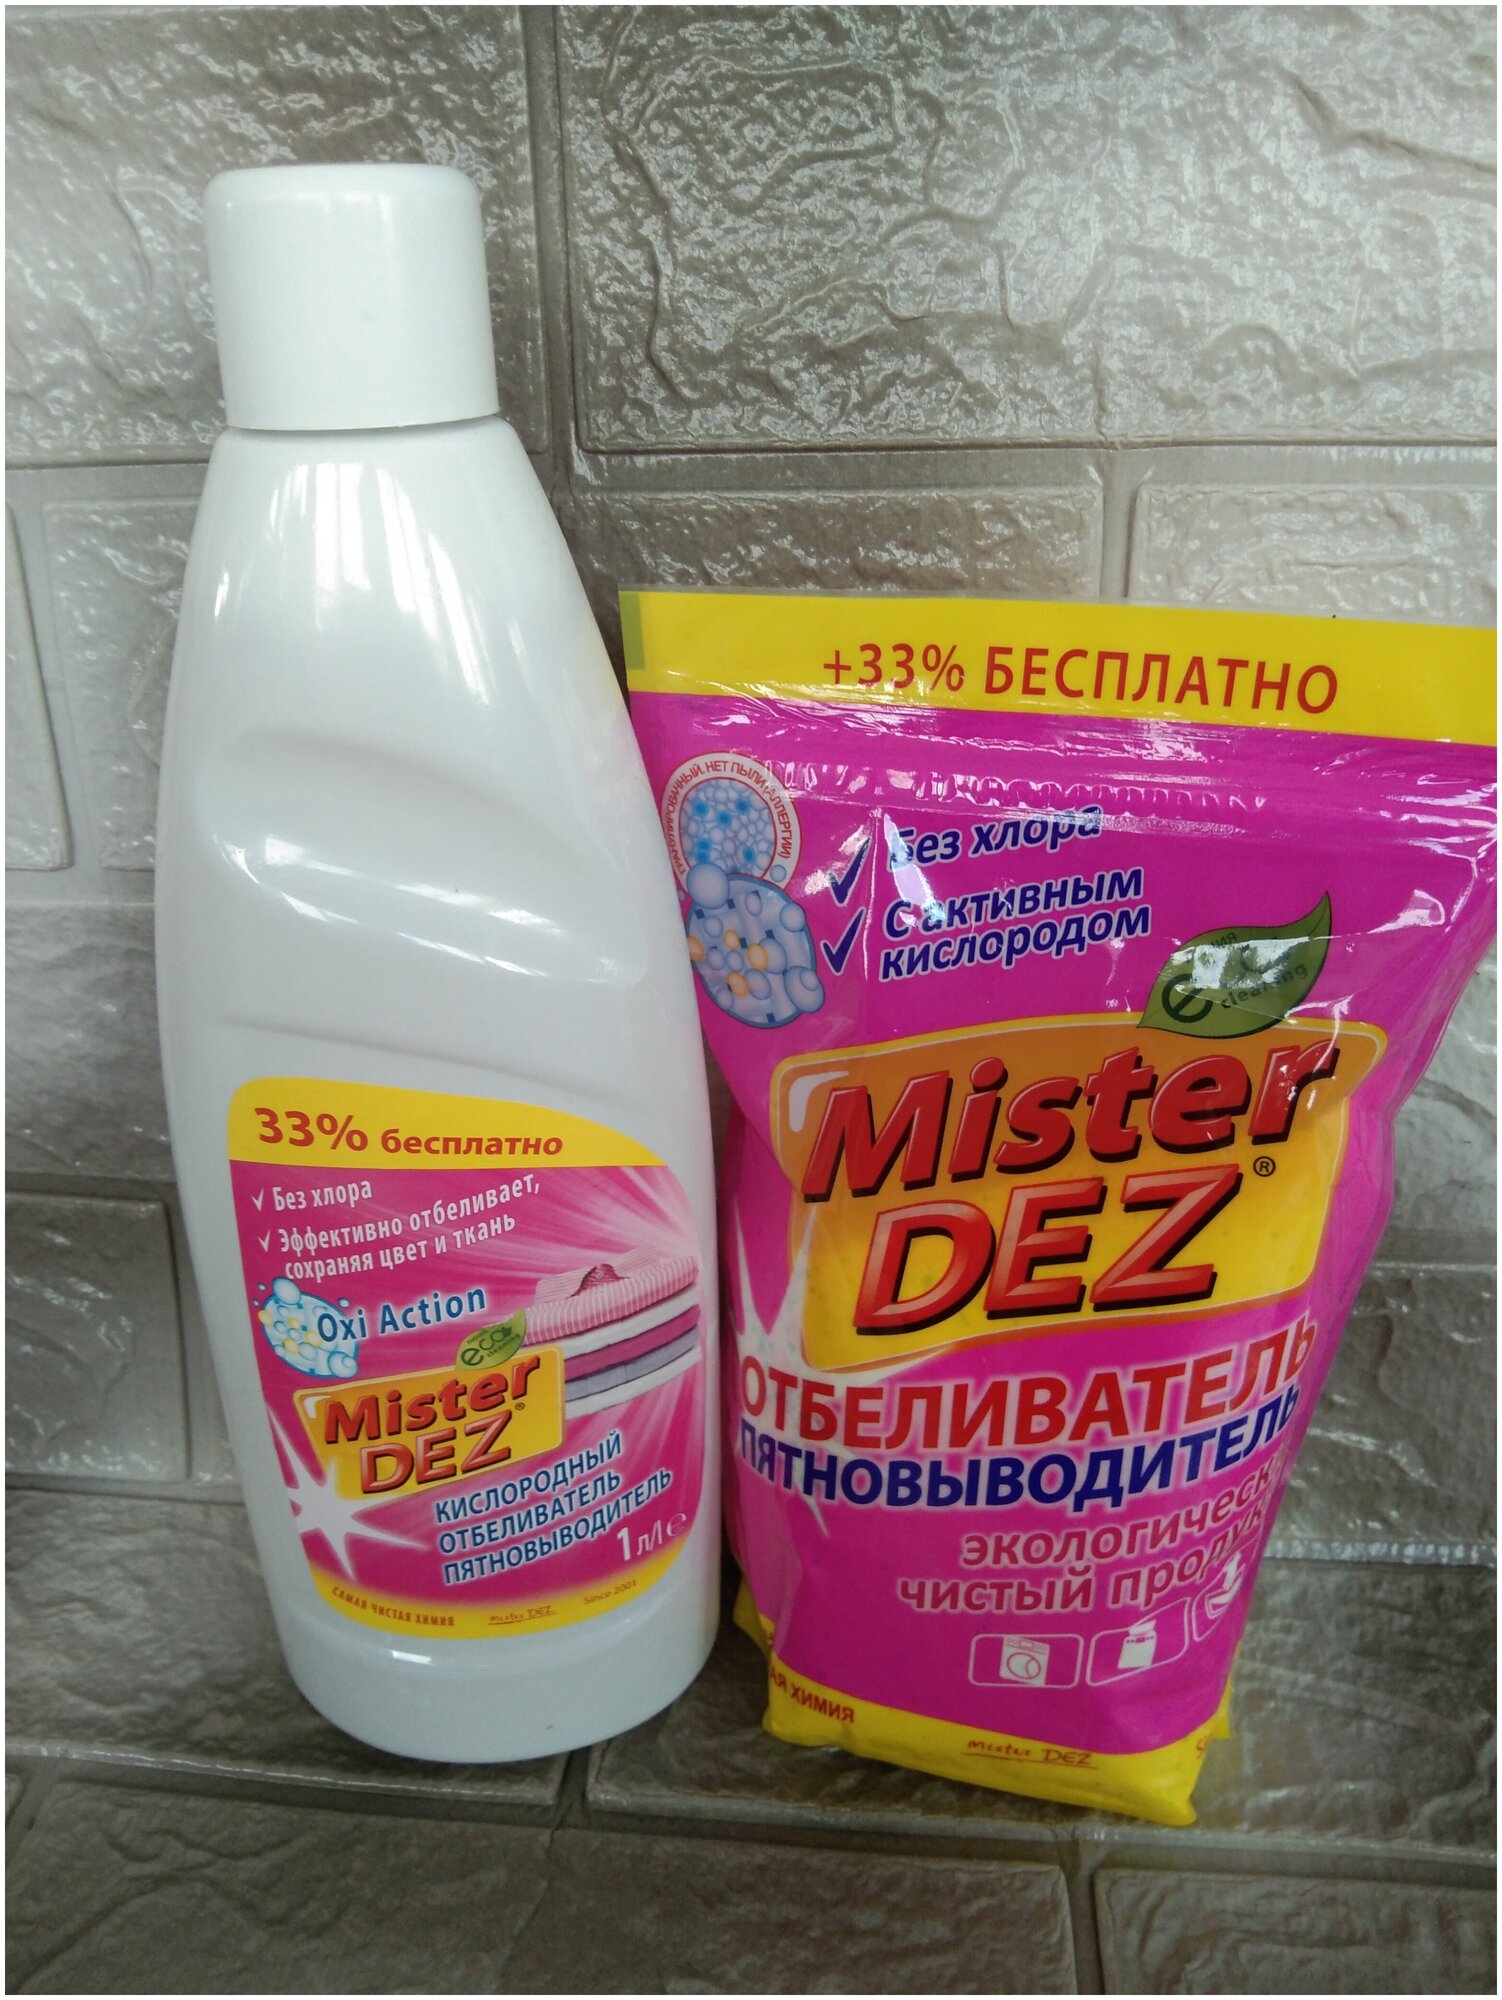 Набор кислородных отбеливателей- пятновыводителей "Mister DEZ" жидкий и порошок 2 предмета в наборе